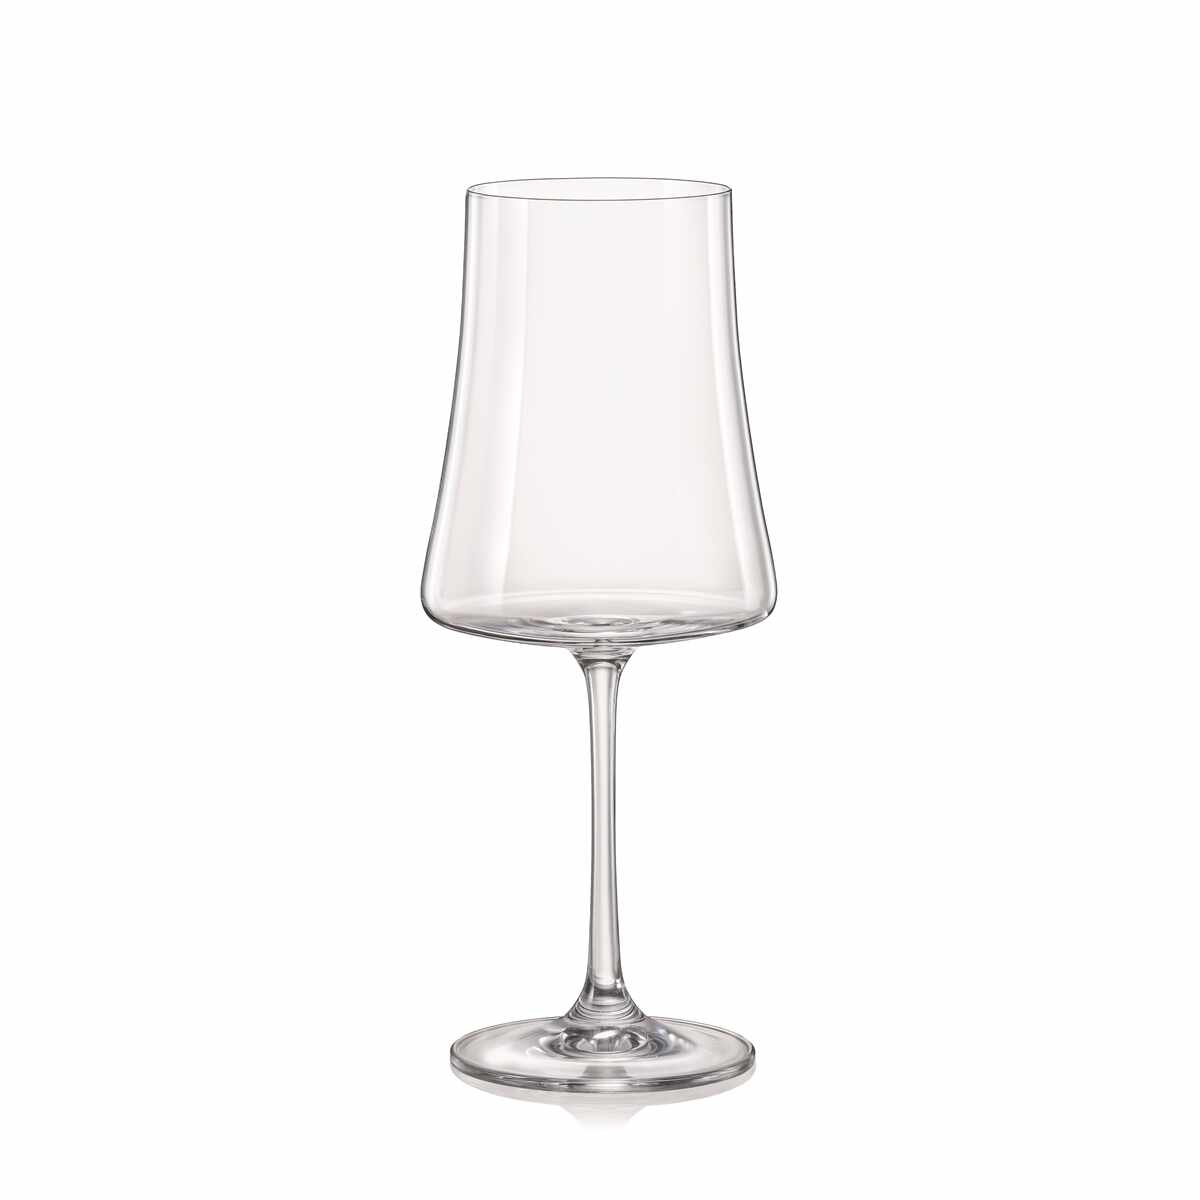 XTRA Set 6 pahare sticla cristalina vin 560 ml